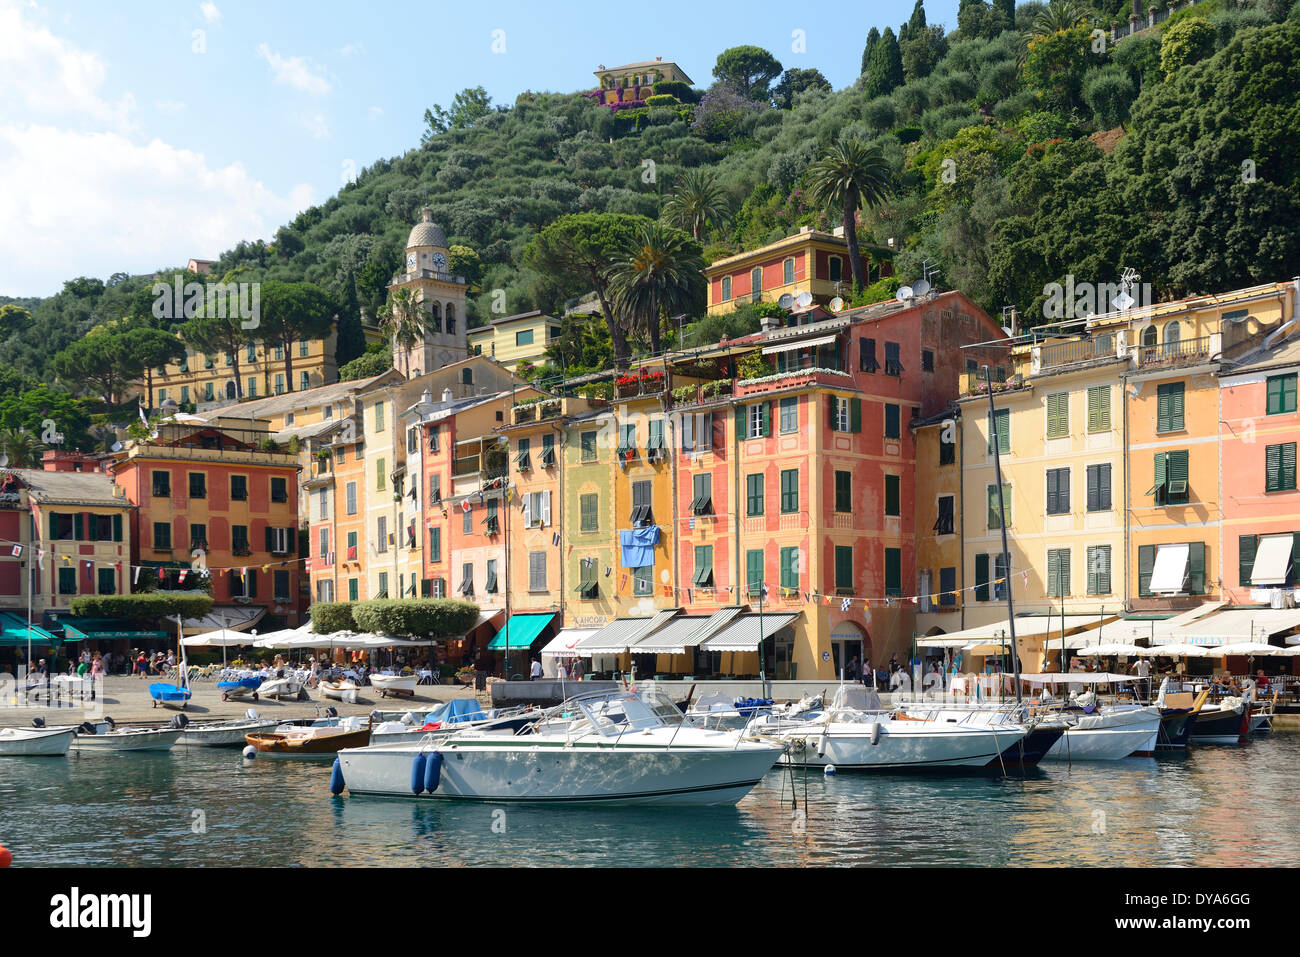 Italie, province de Gênes, Riviera, Portofino, méditerranéen, port, ville, voile Banque D'Images